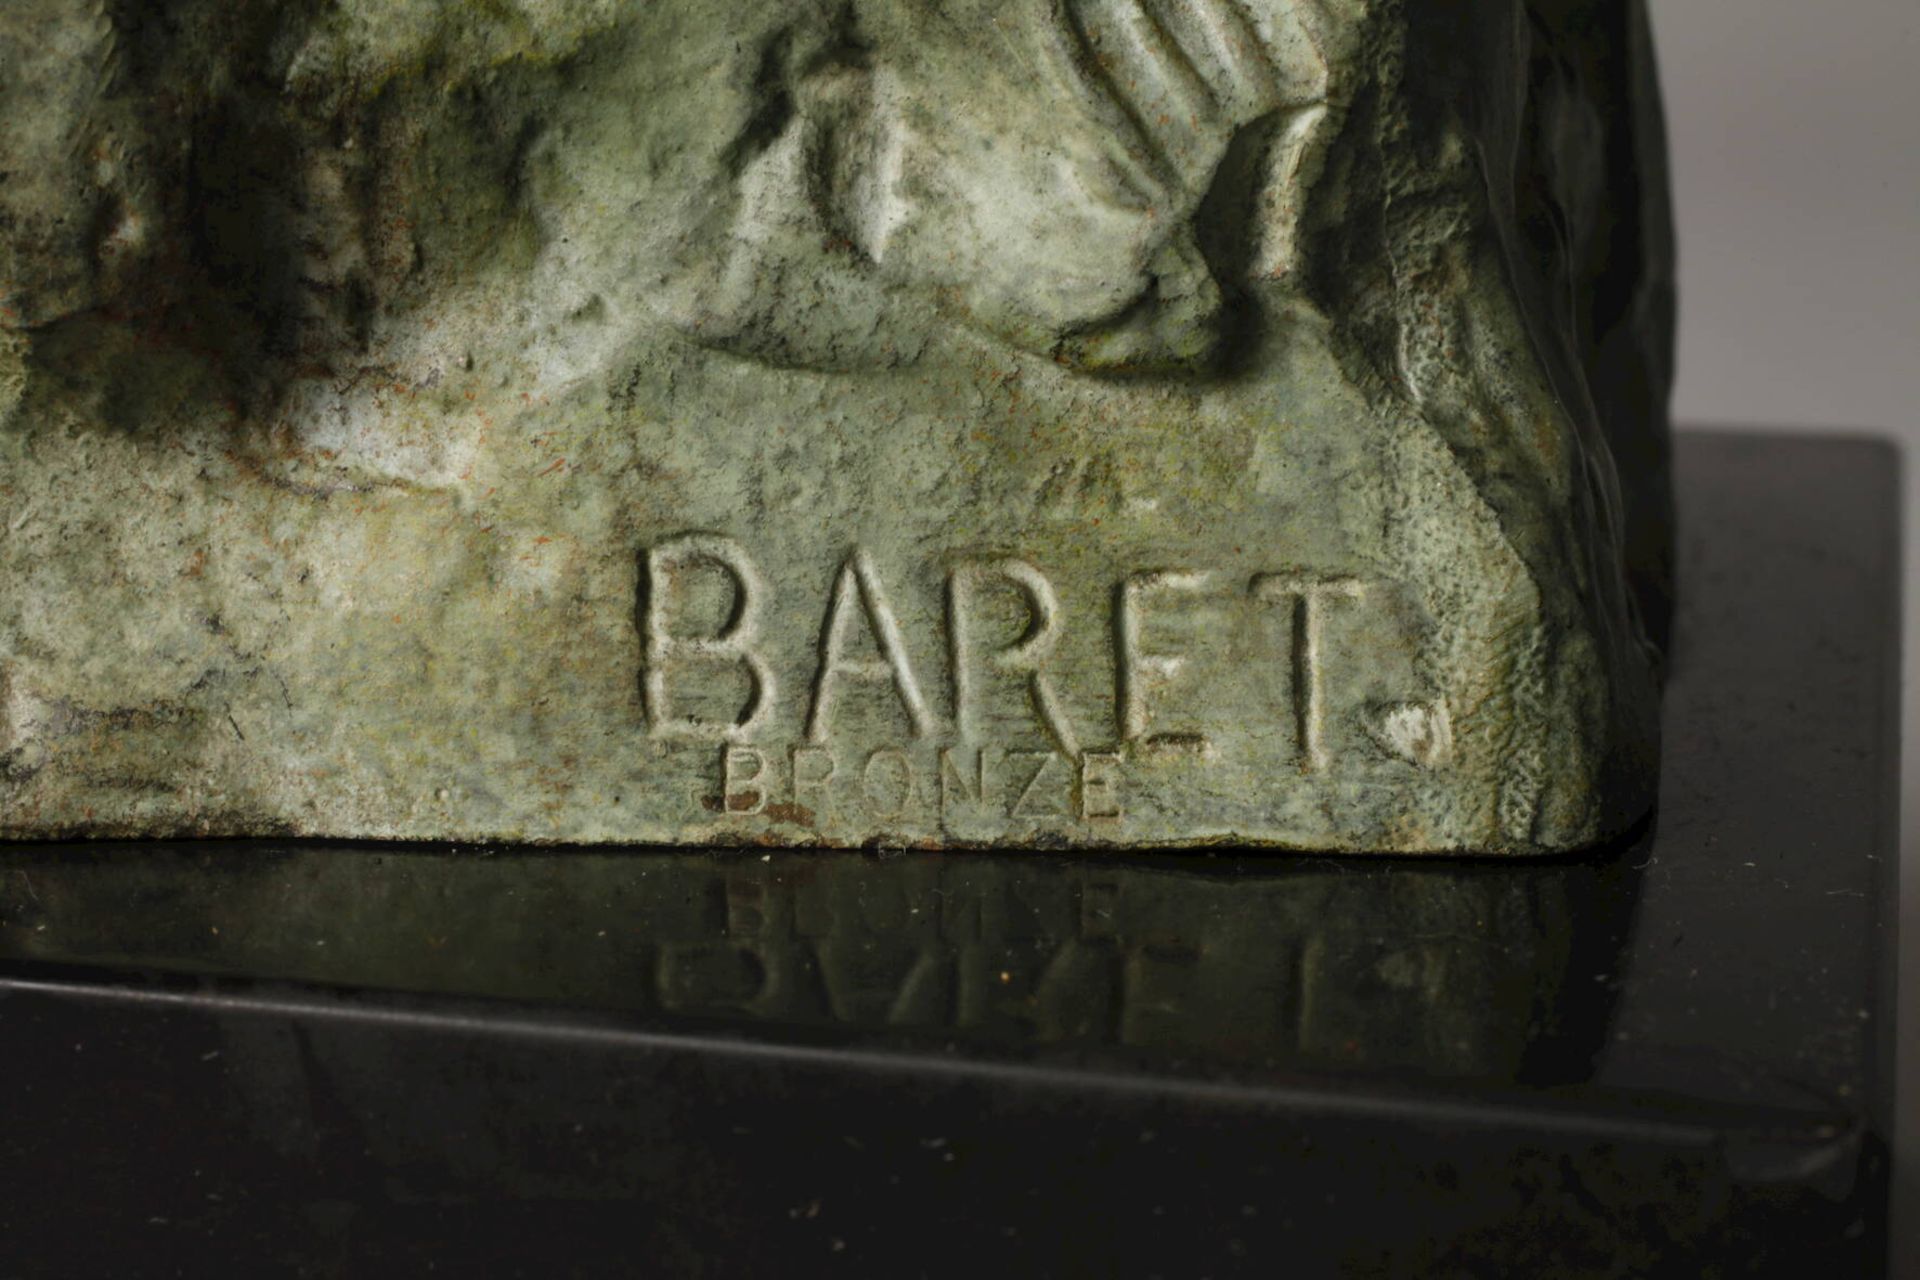 Baret, Bust Ludwig van Beethoven - Image 6 of 6